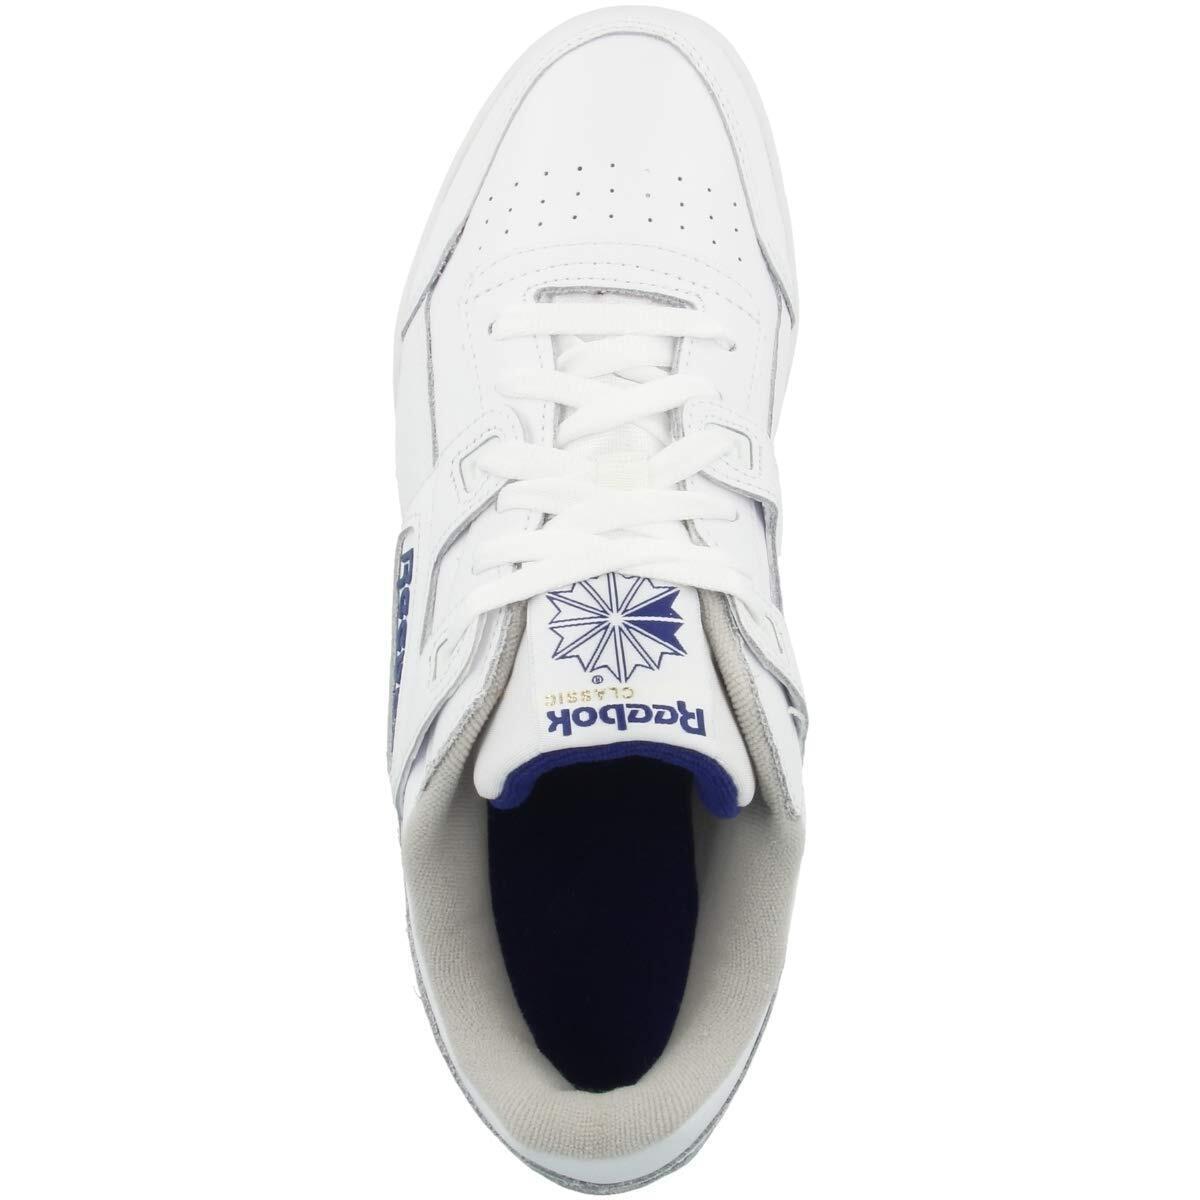 Reebok Men Workout Plus Sneaker White/royal Blue 2759 - White/Royal